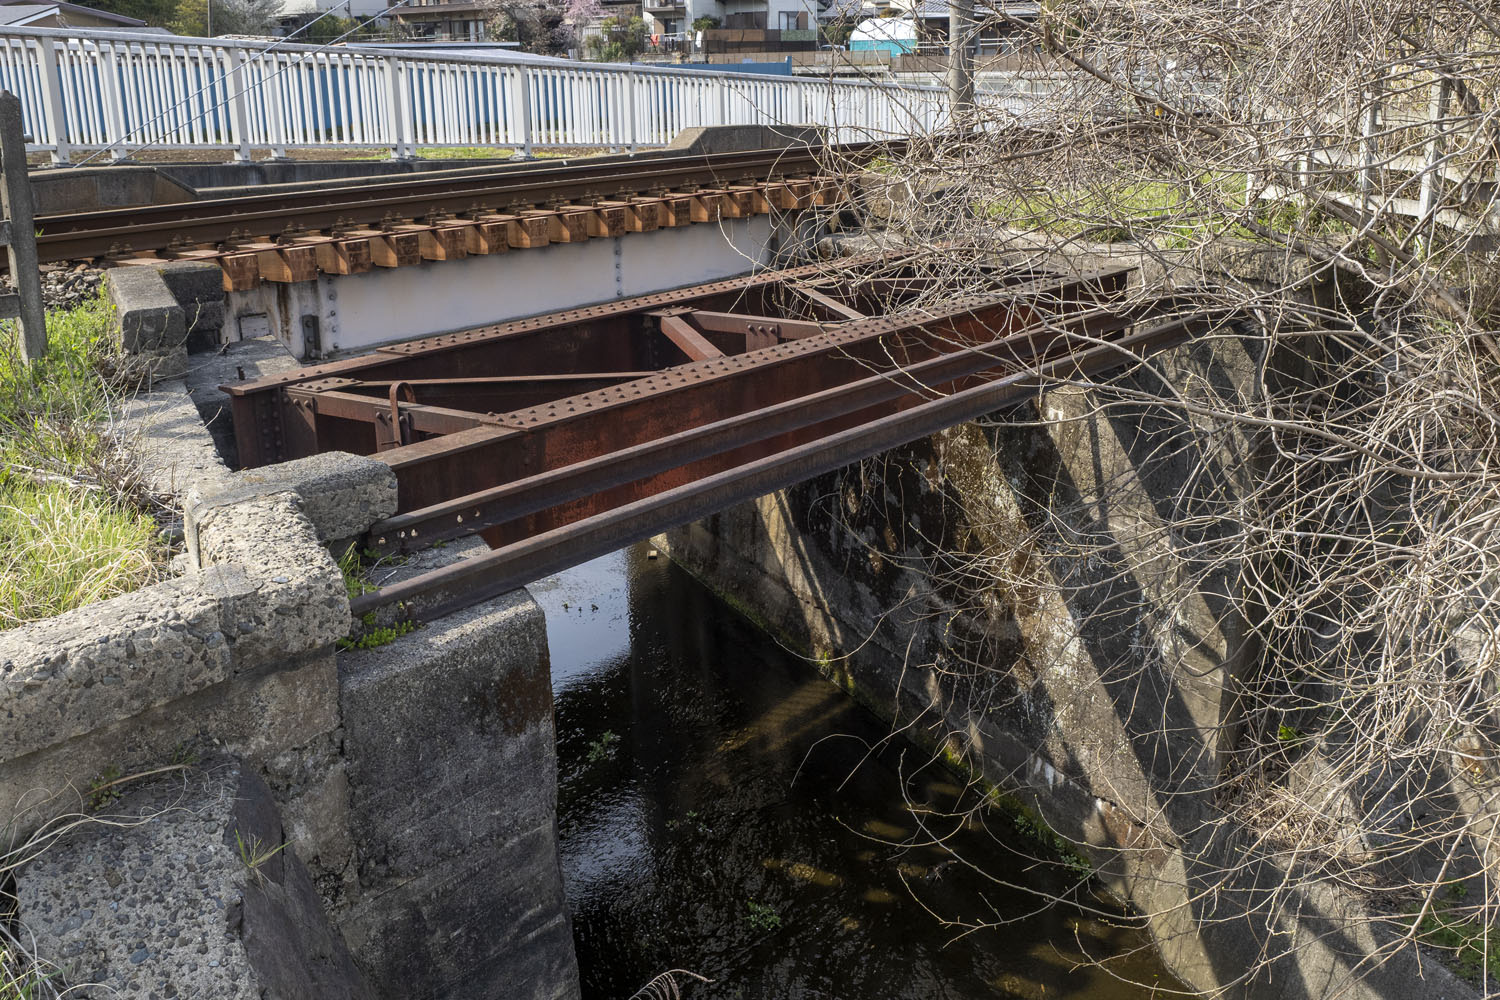 橋の全景。橋台は軍用線のときに造られたと推察する。桁と並んで2本の古レールがあるのは、職員用の渡り板だろうか。米軍撮影の空中写真では判別できなかった。